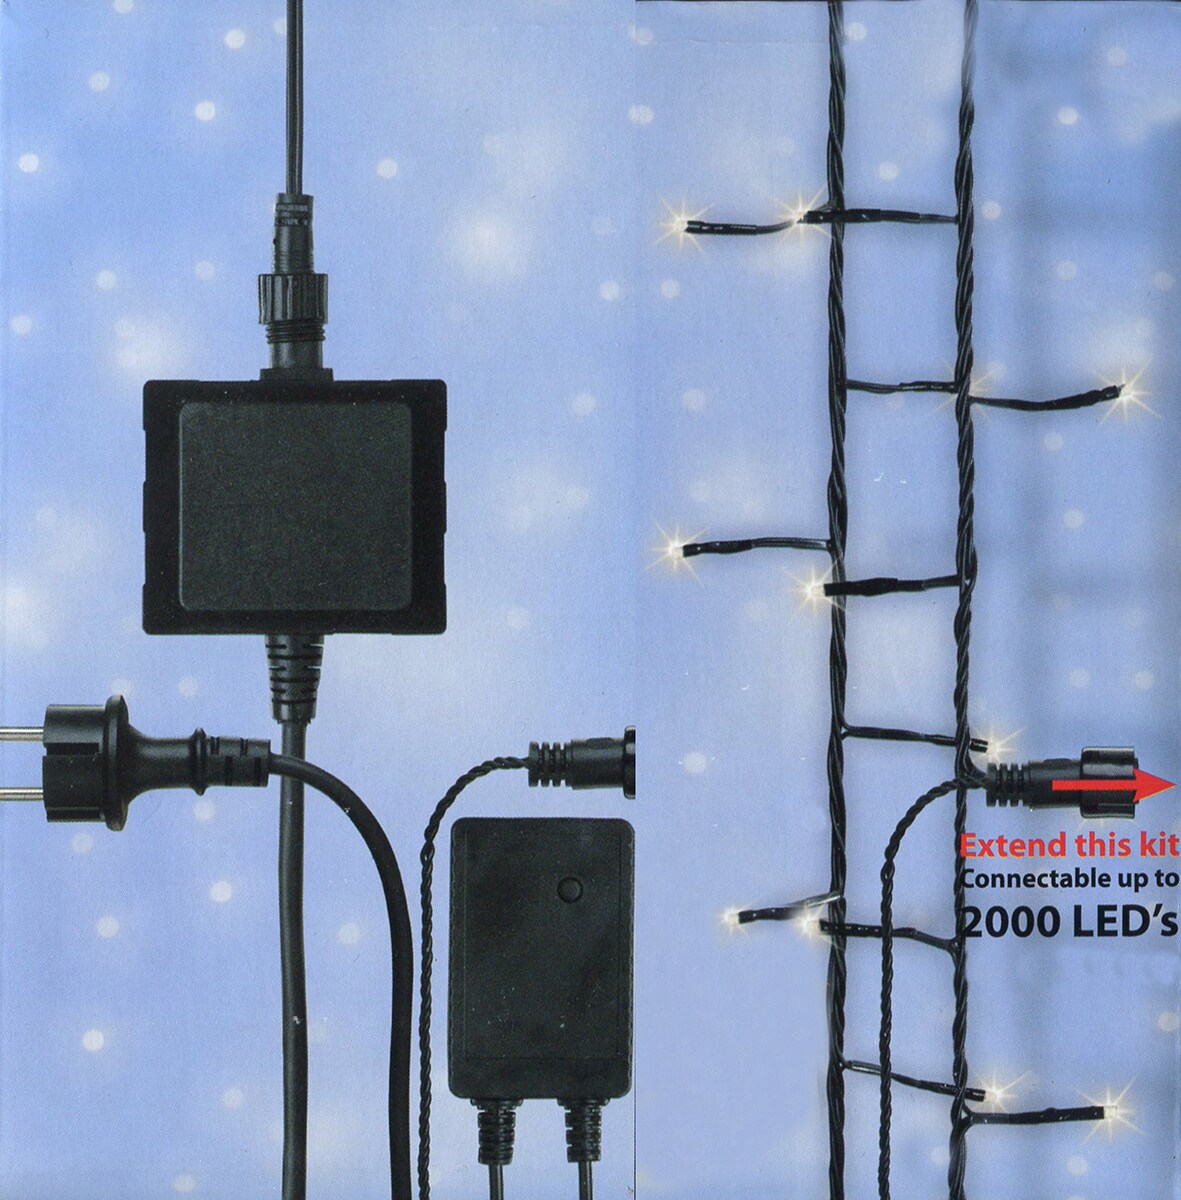 Kaemingk Connect 24V LED Starter Kit with 2 Sets of Christmas Lights - Warm Clear